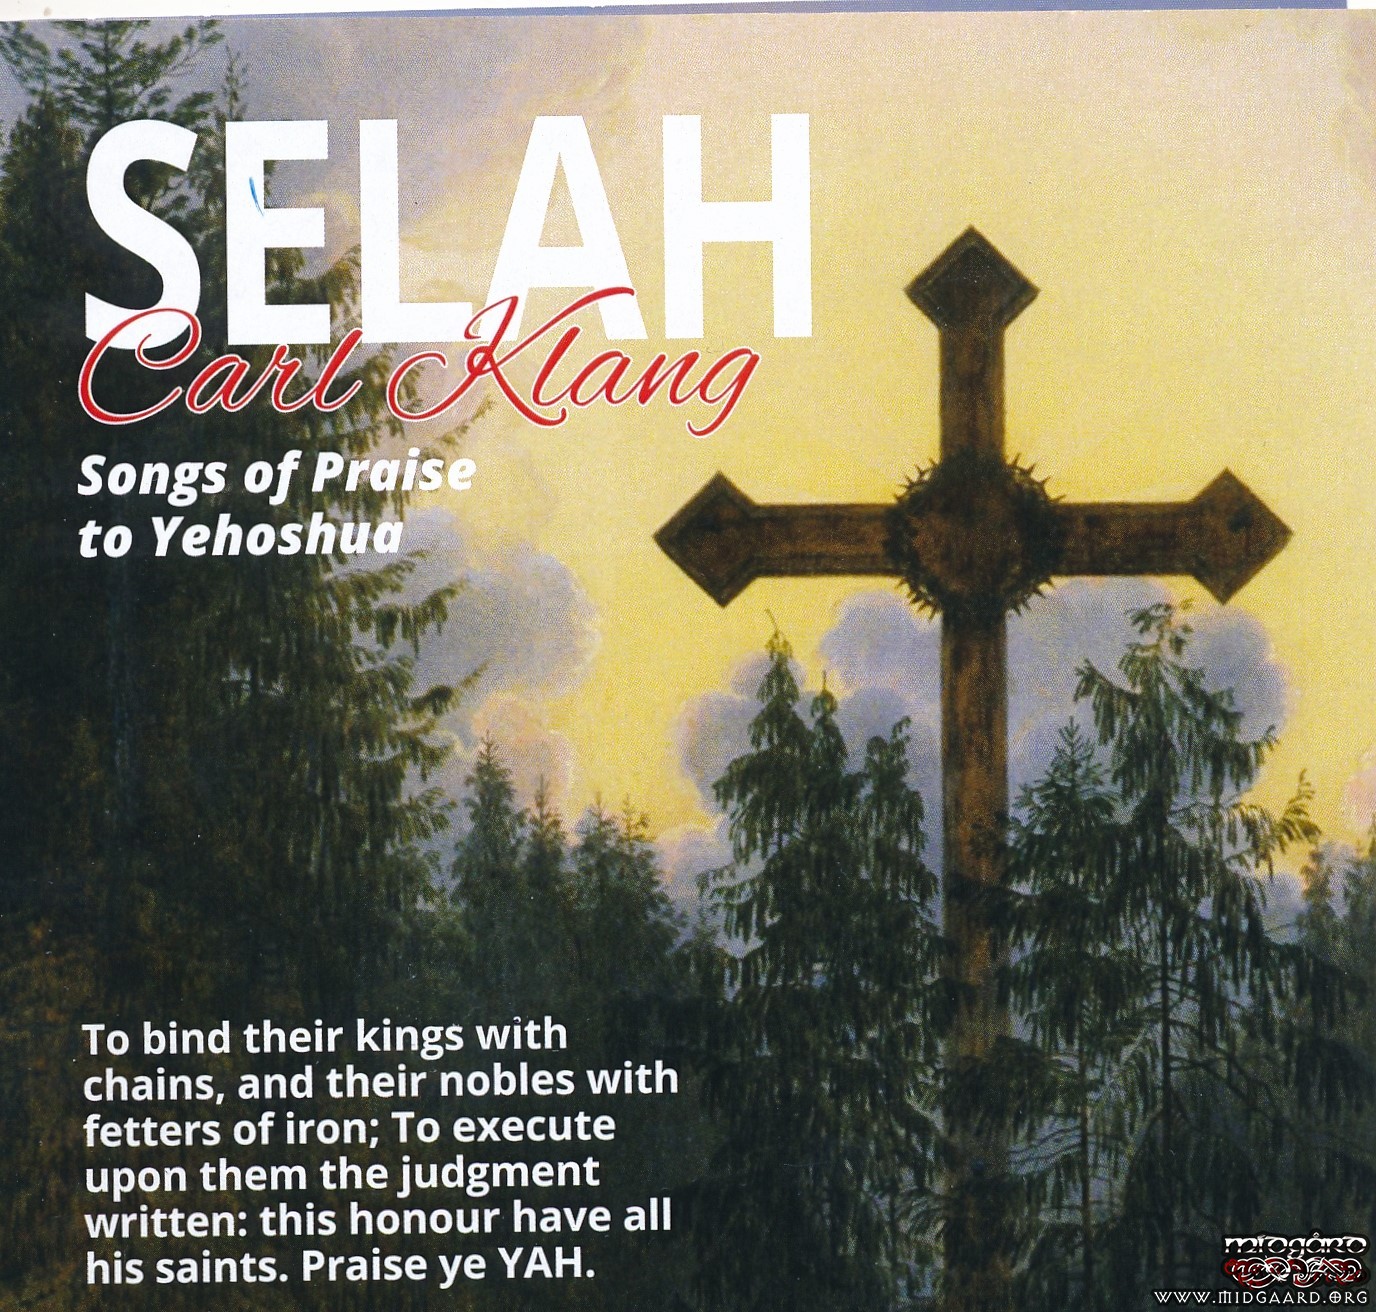 https://www.midgaardshop.com/images/products/4619-carl-klang-selah-songs-of-praise-to-yehoshua-1.jpg